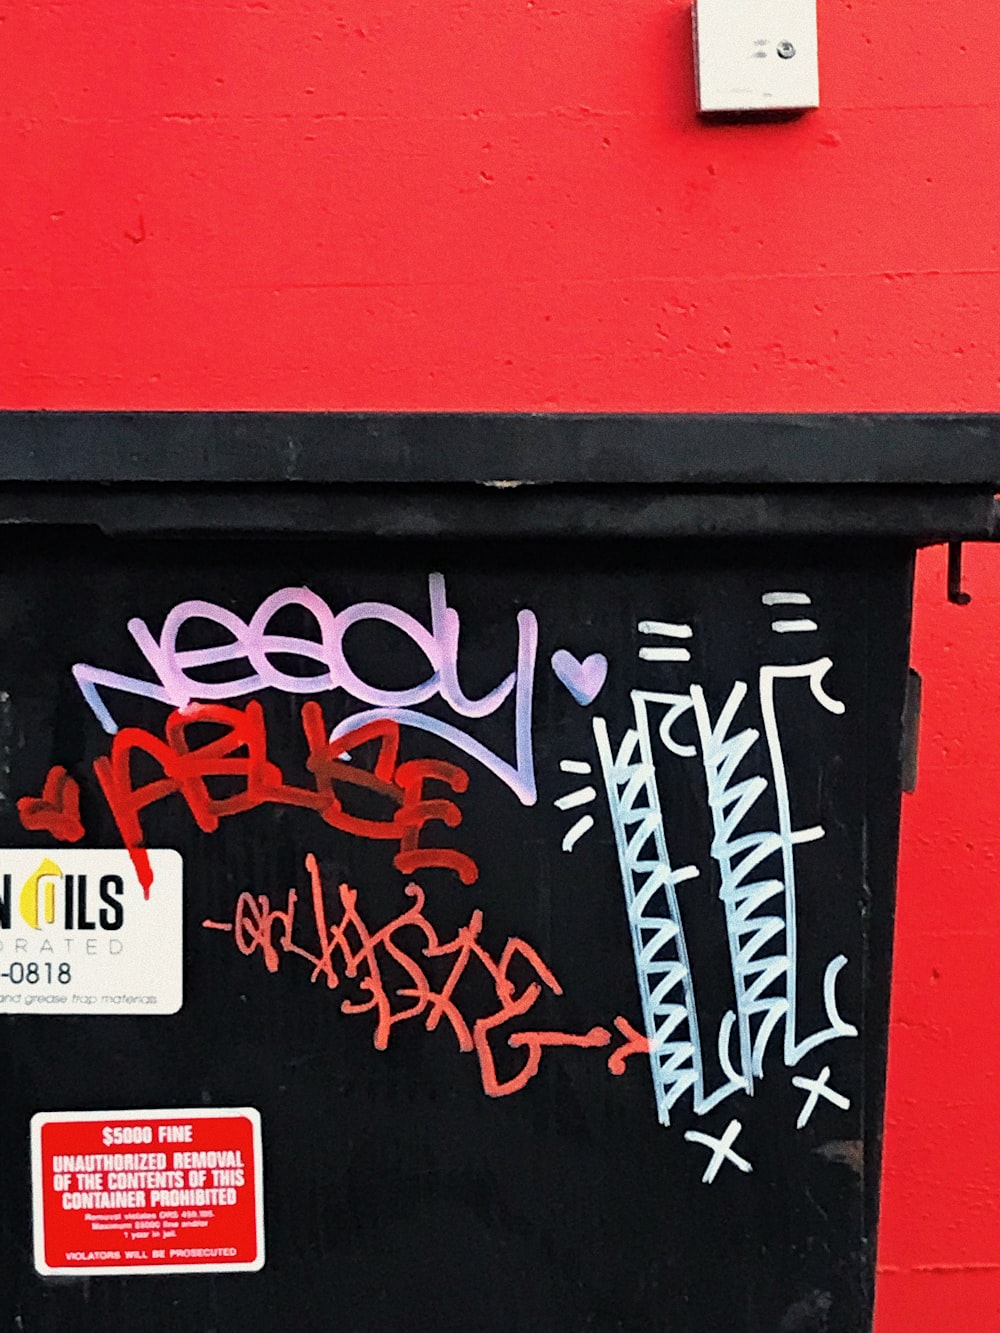 eine rote Wand mit einer schwarzen Tür und einigen Graffiti darauf